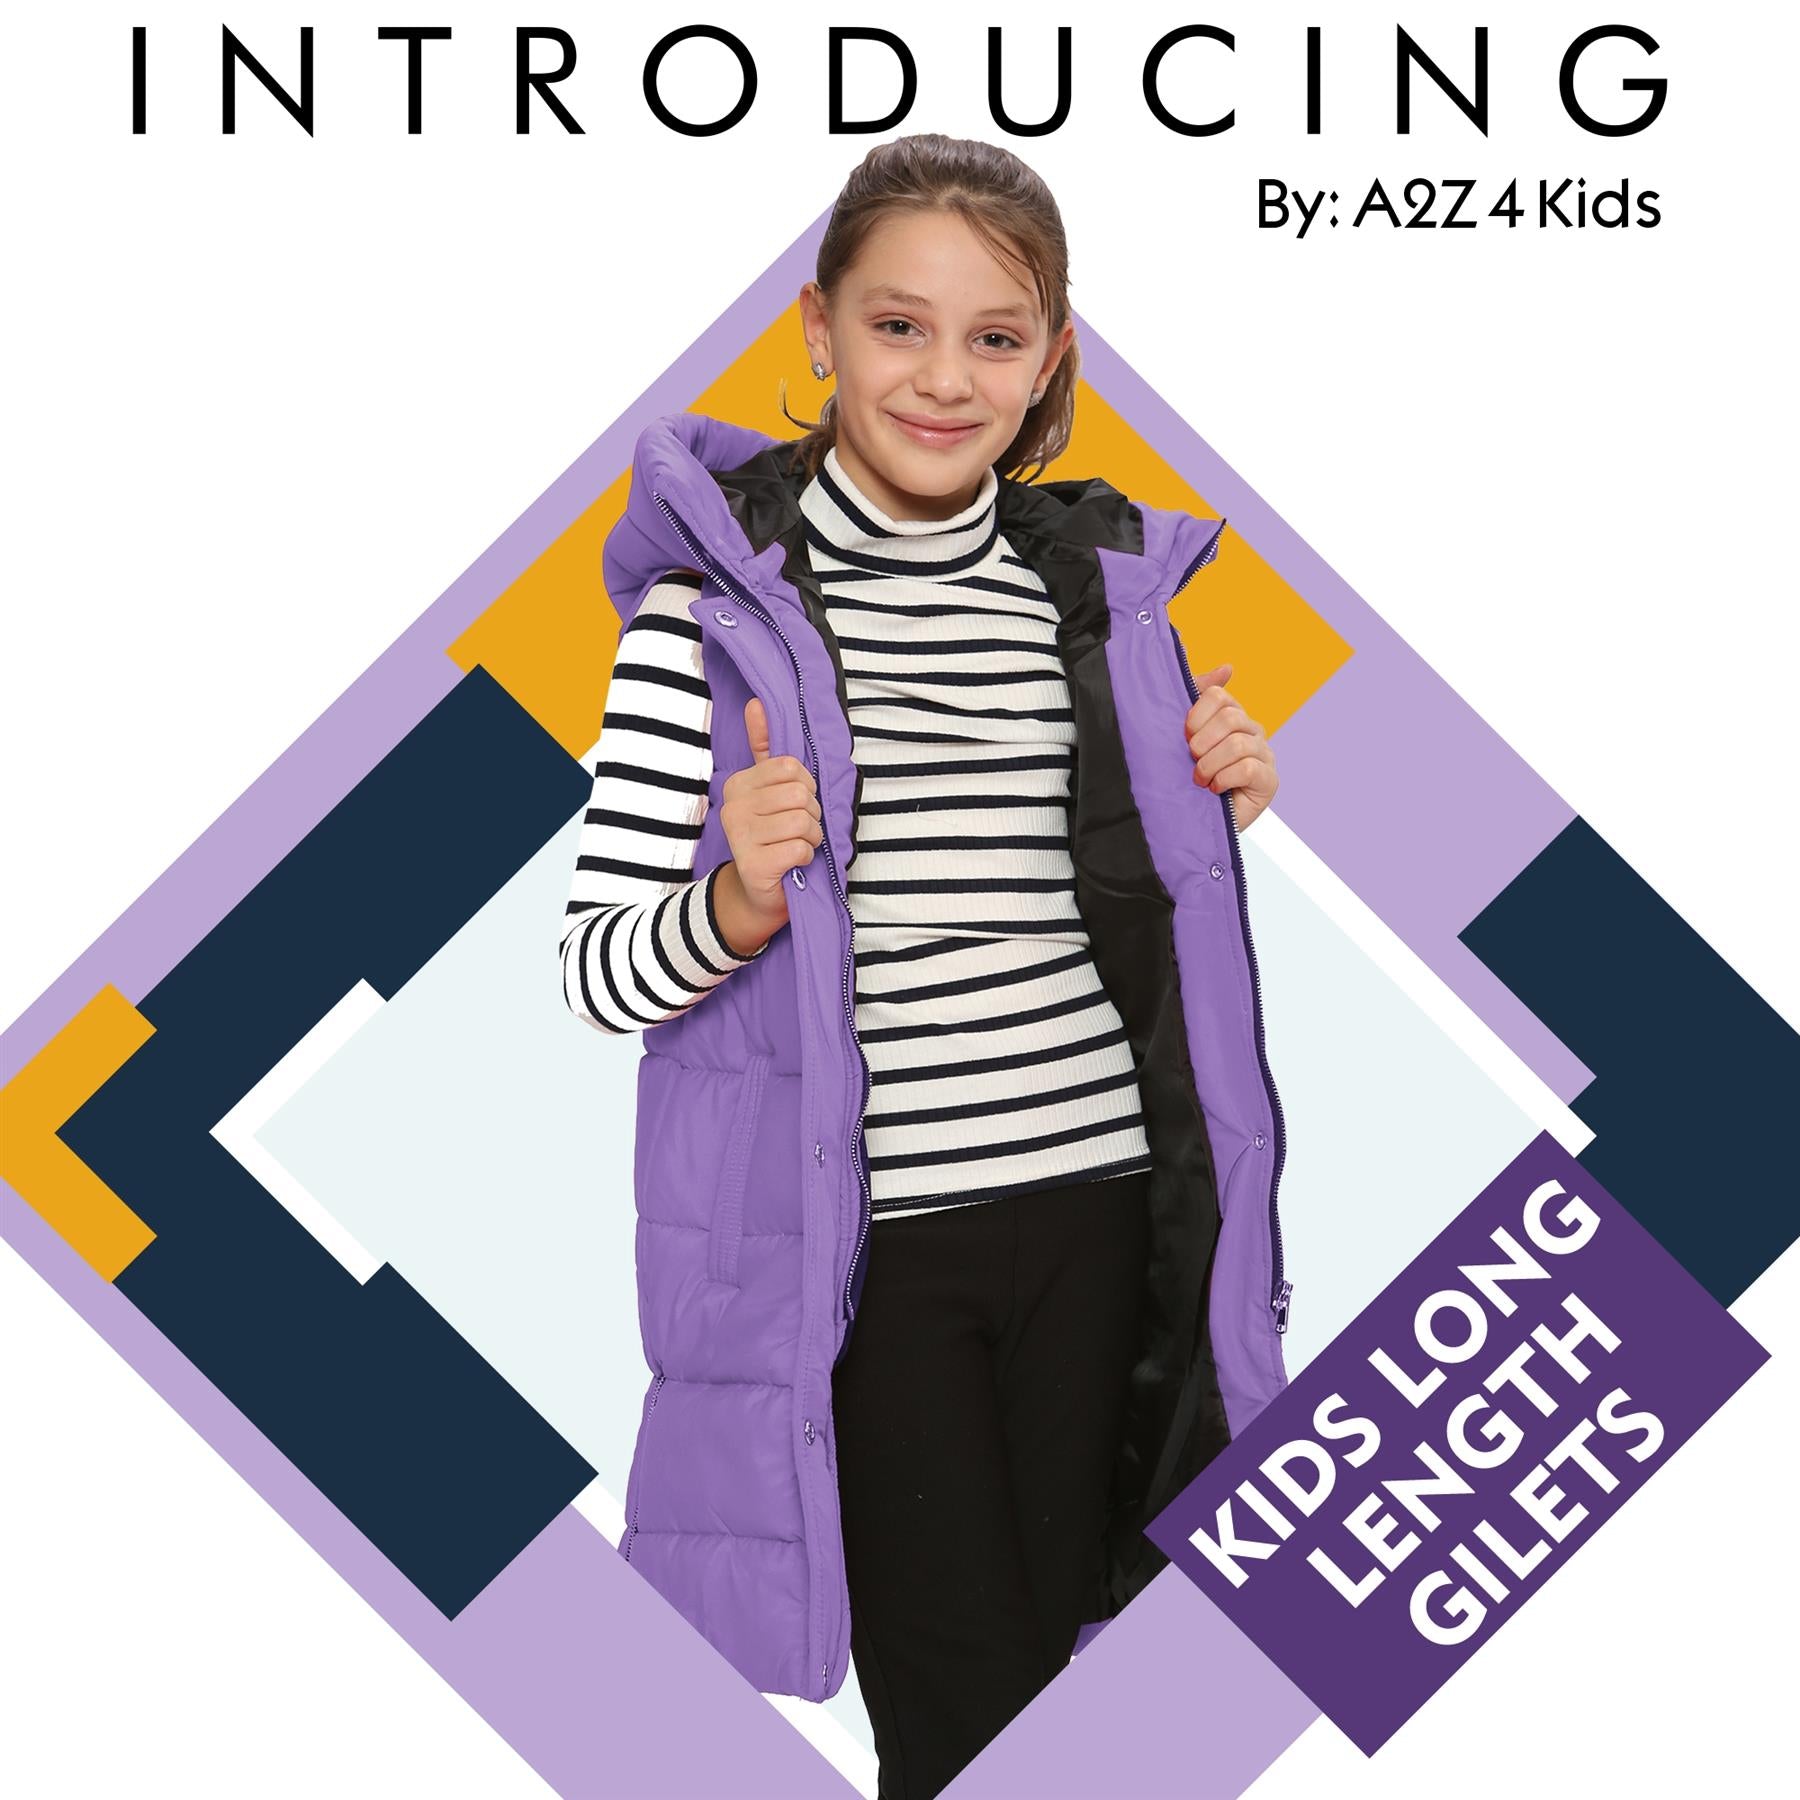 Kids Girls Oversized Lilac Gilet Long Line Style Jacket Long Sleeveless Coat